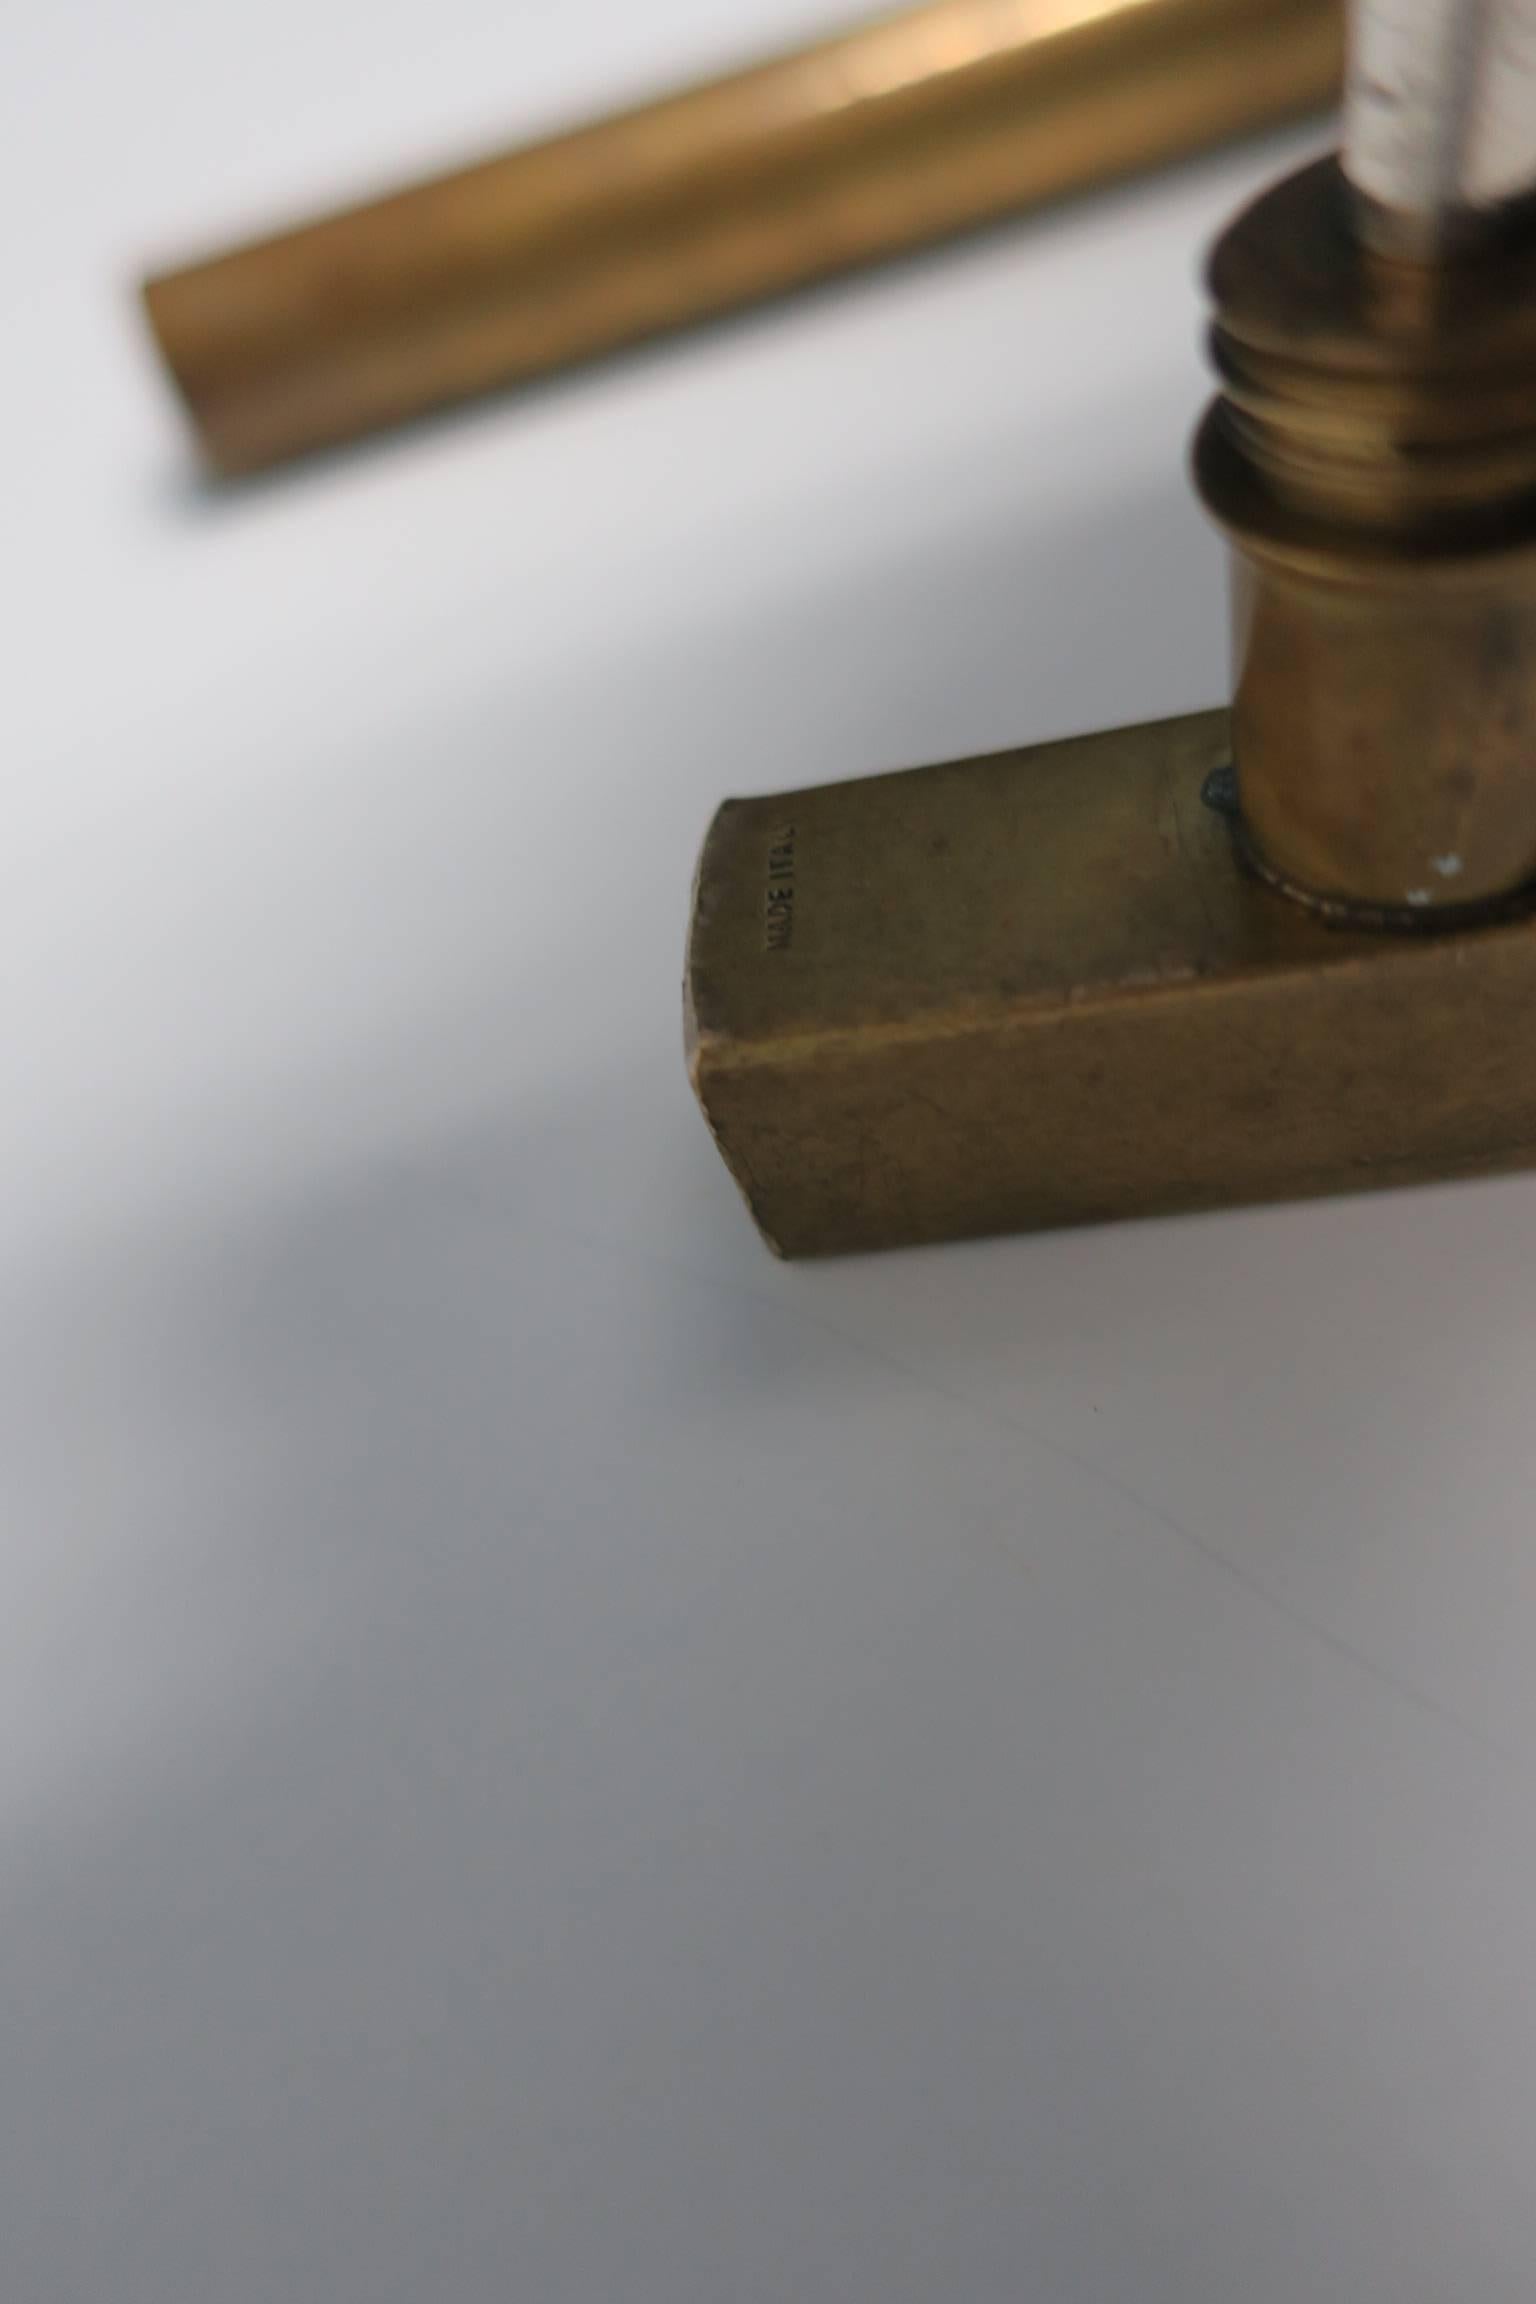 Modern Italian Brass Hammer Tool Corkscrew Bottle Opener 